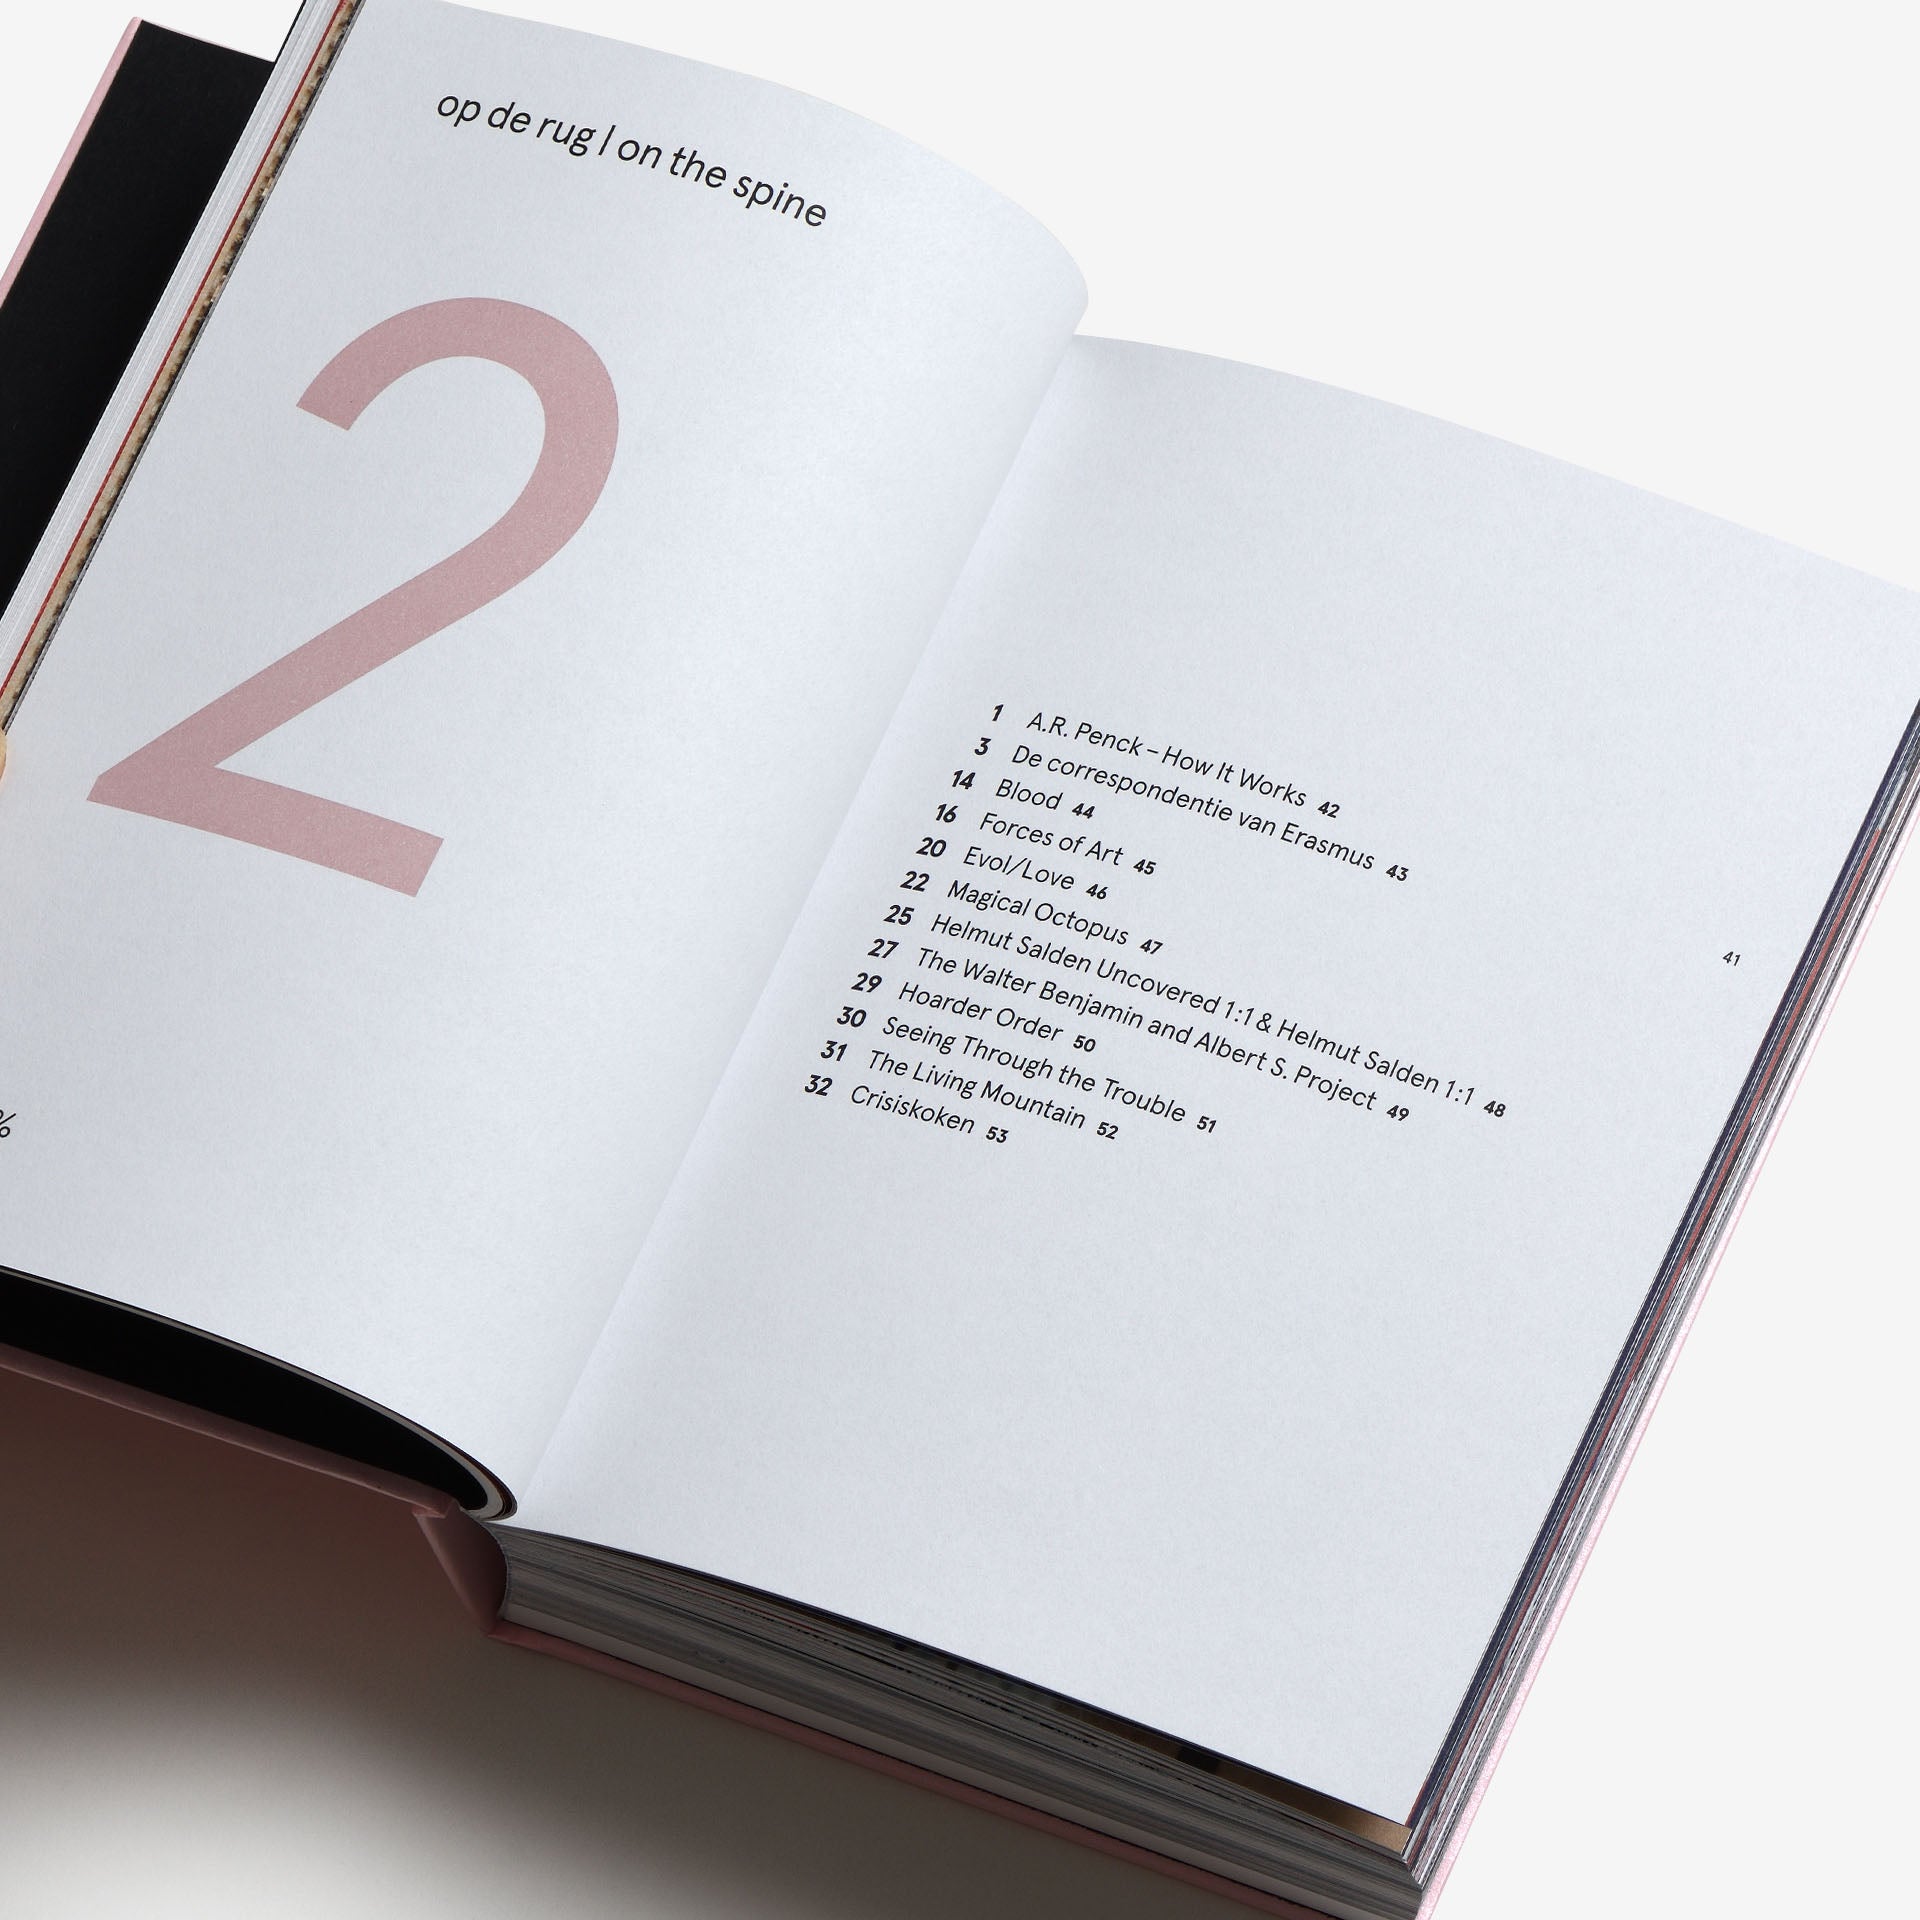 The Best Dutch Book Designs 2020